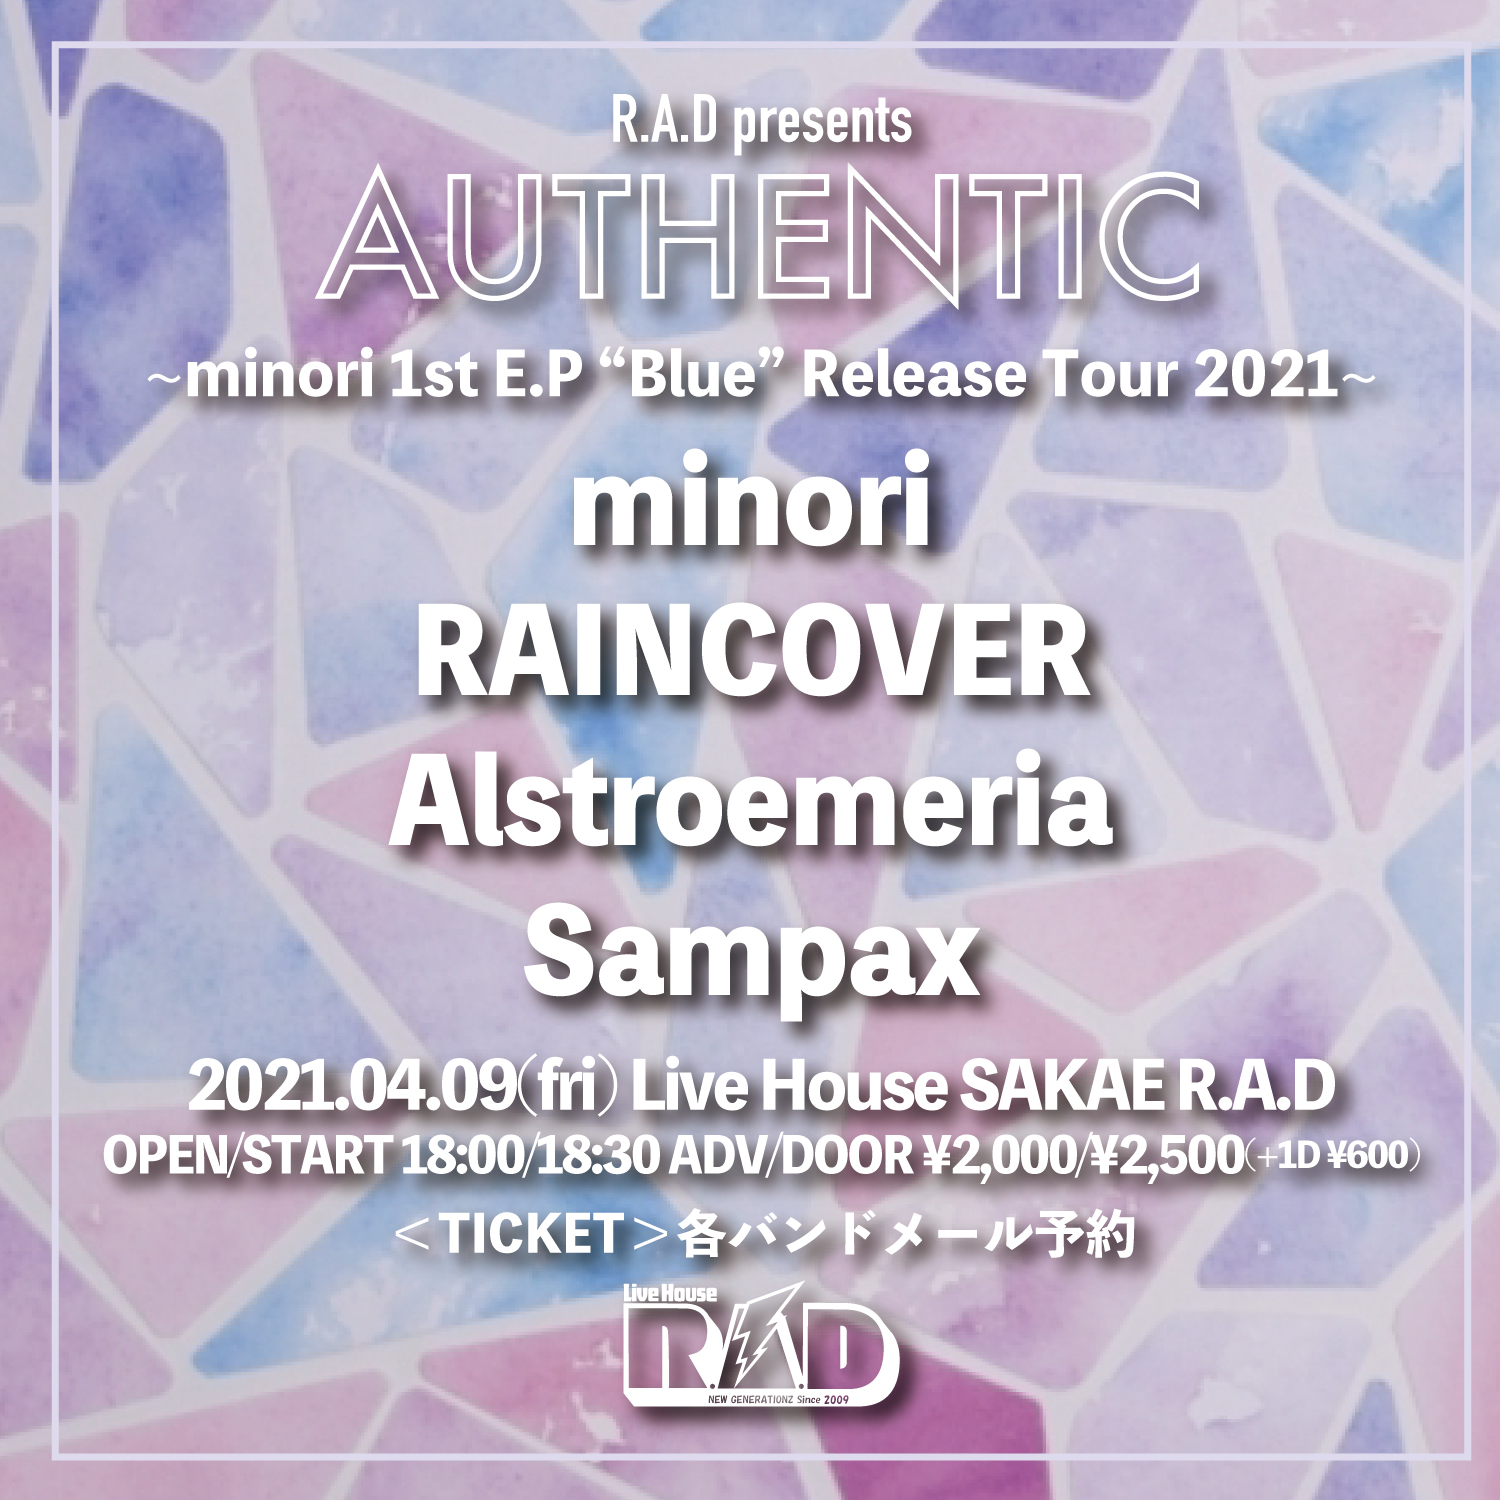 R.A.D presents "AUTHENTIC" 〜minori 1st E.P “Blue” Release Tour 2021〜